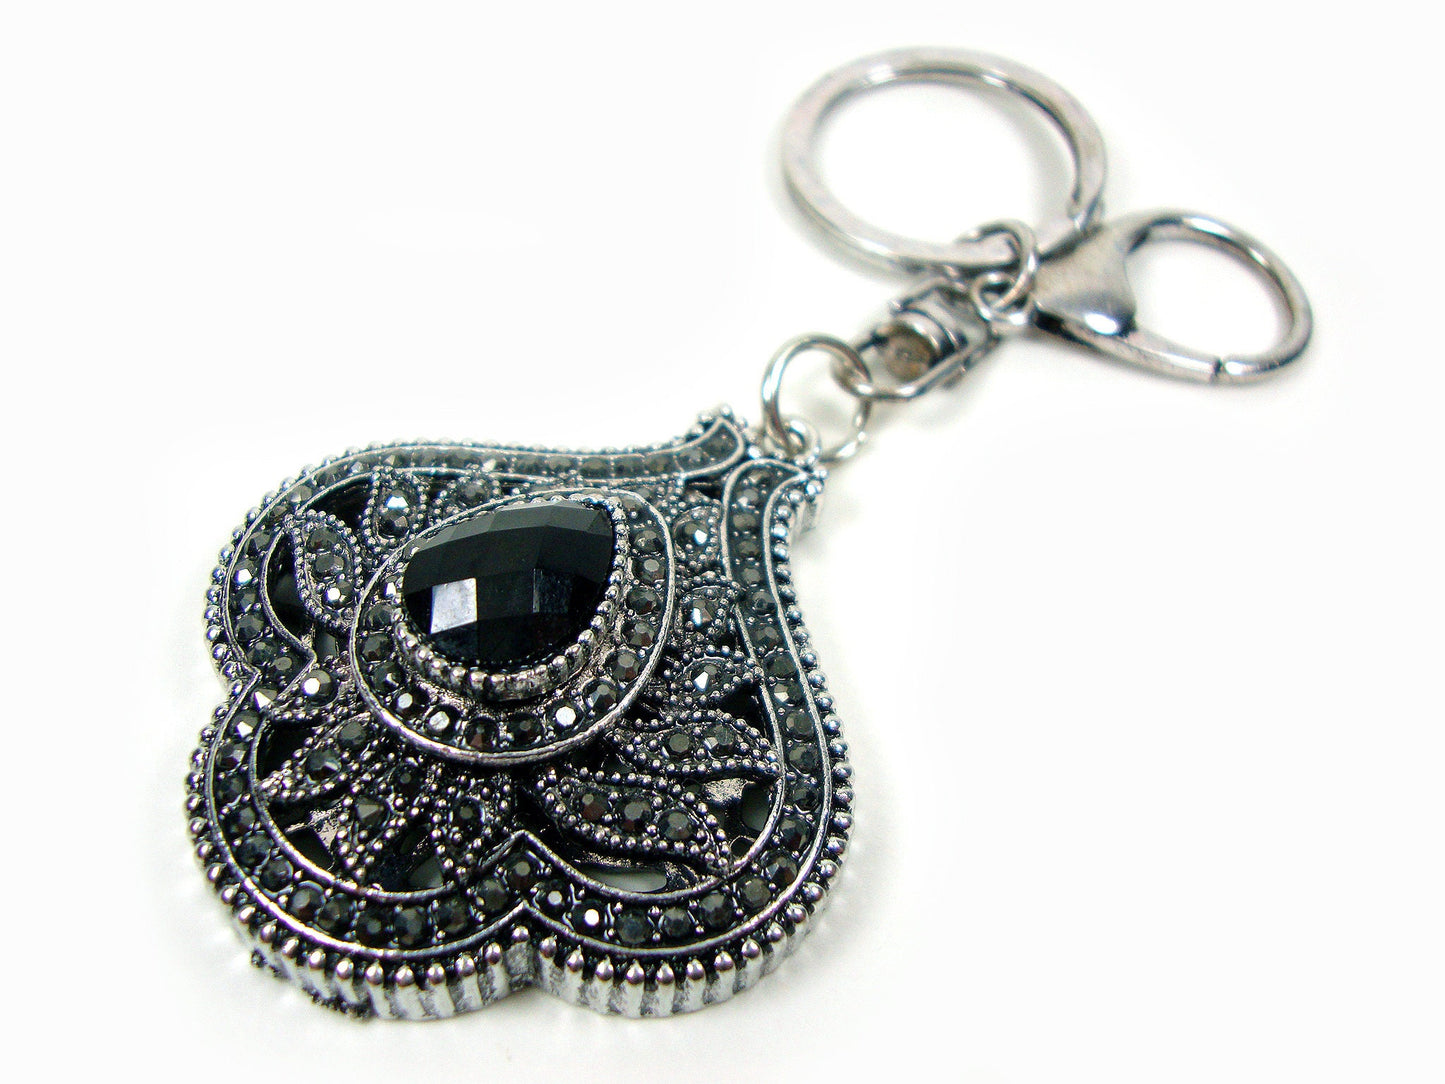 Porte-clés de feuille de pierres de cristal antiques grecques modernes, porte-clés antique vintage ethnique, bijoux traditionnels turcs vintage, art vintage